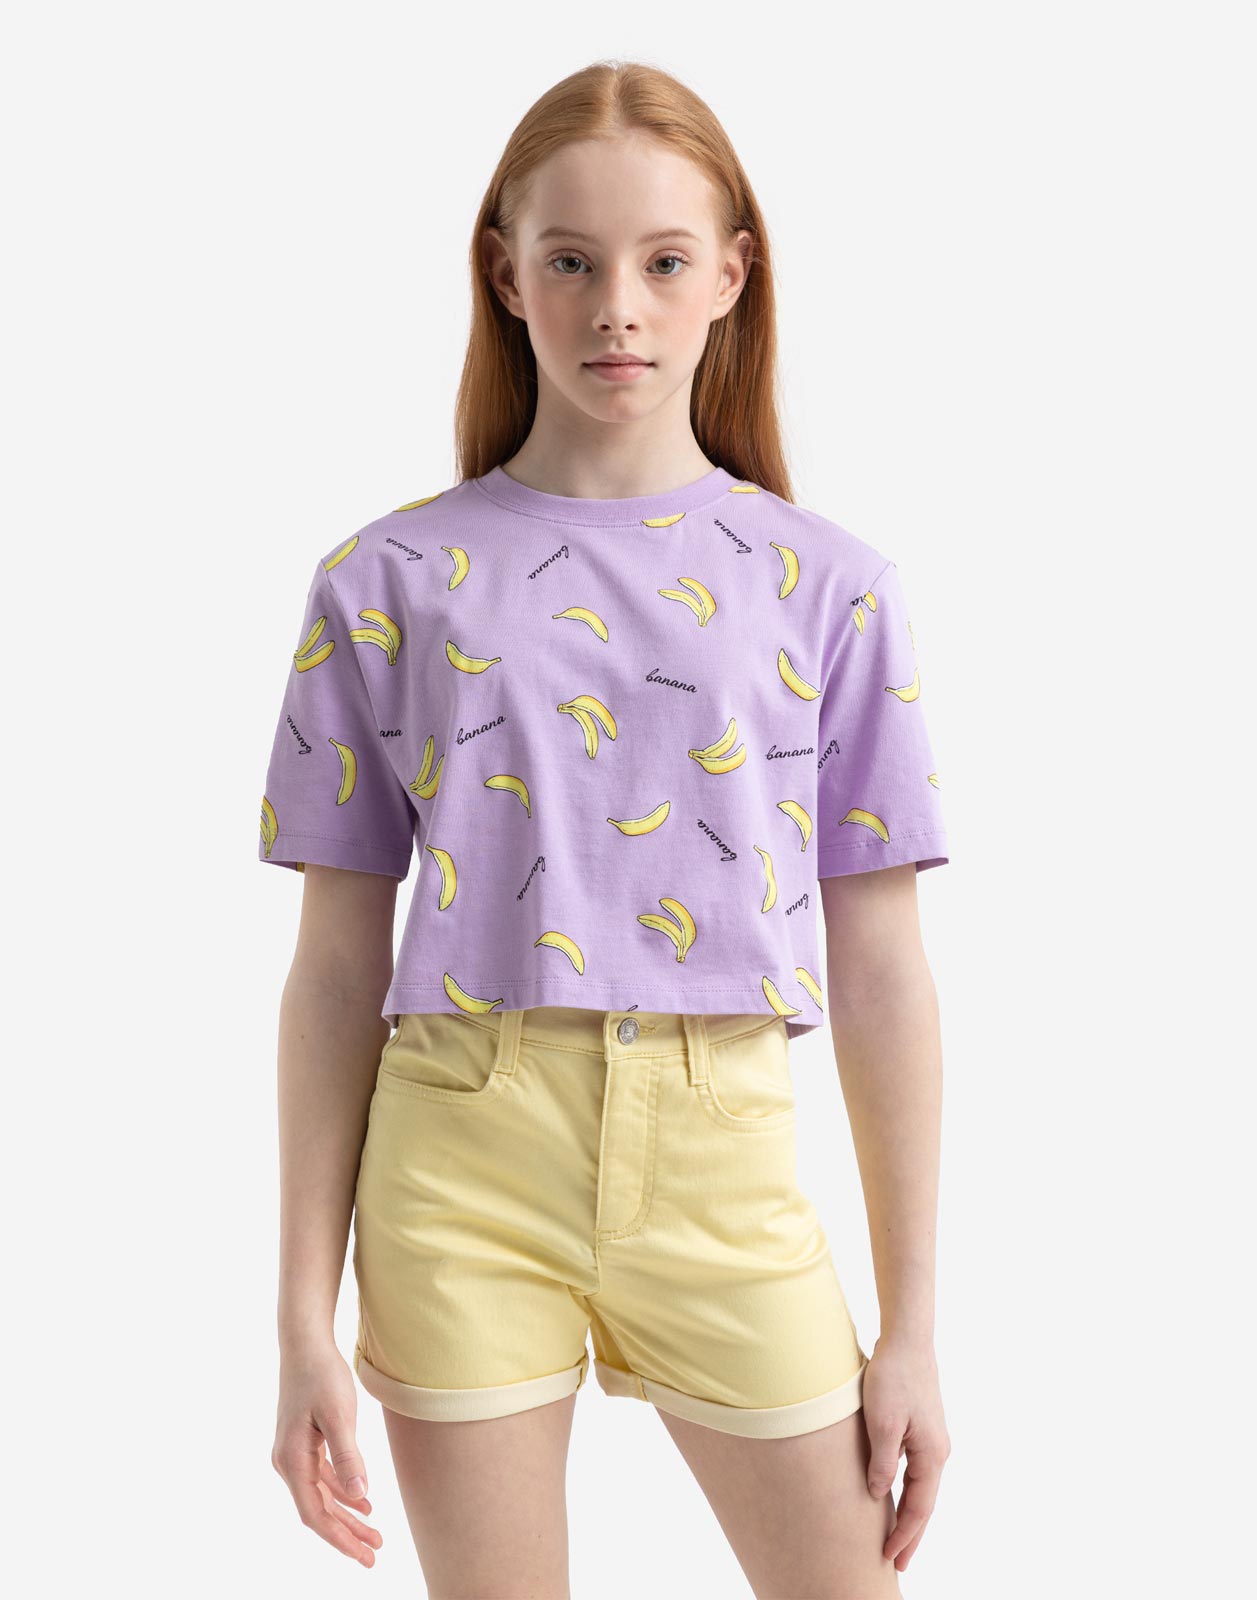 Сиреневая укороченная футболка с бананами для девочки 6-8л/122-128